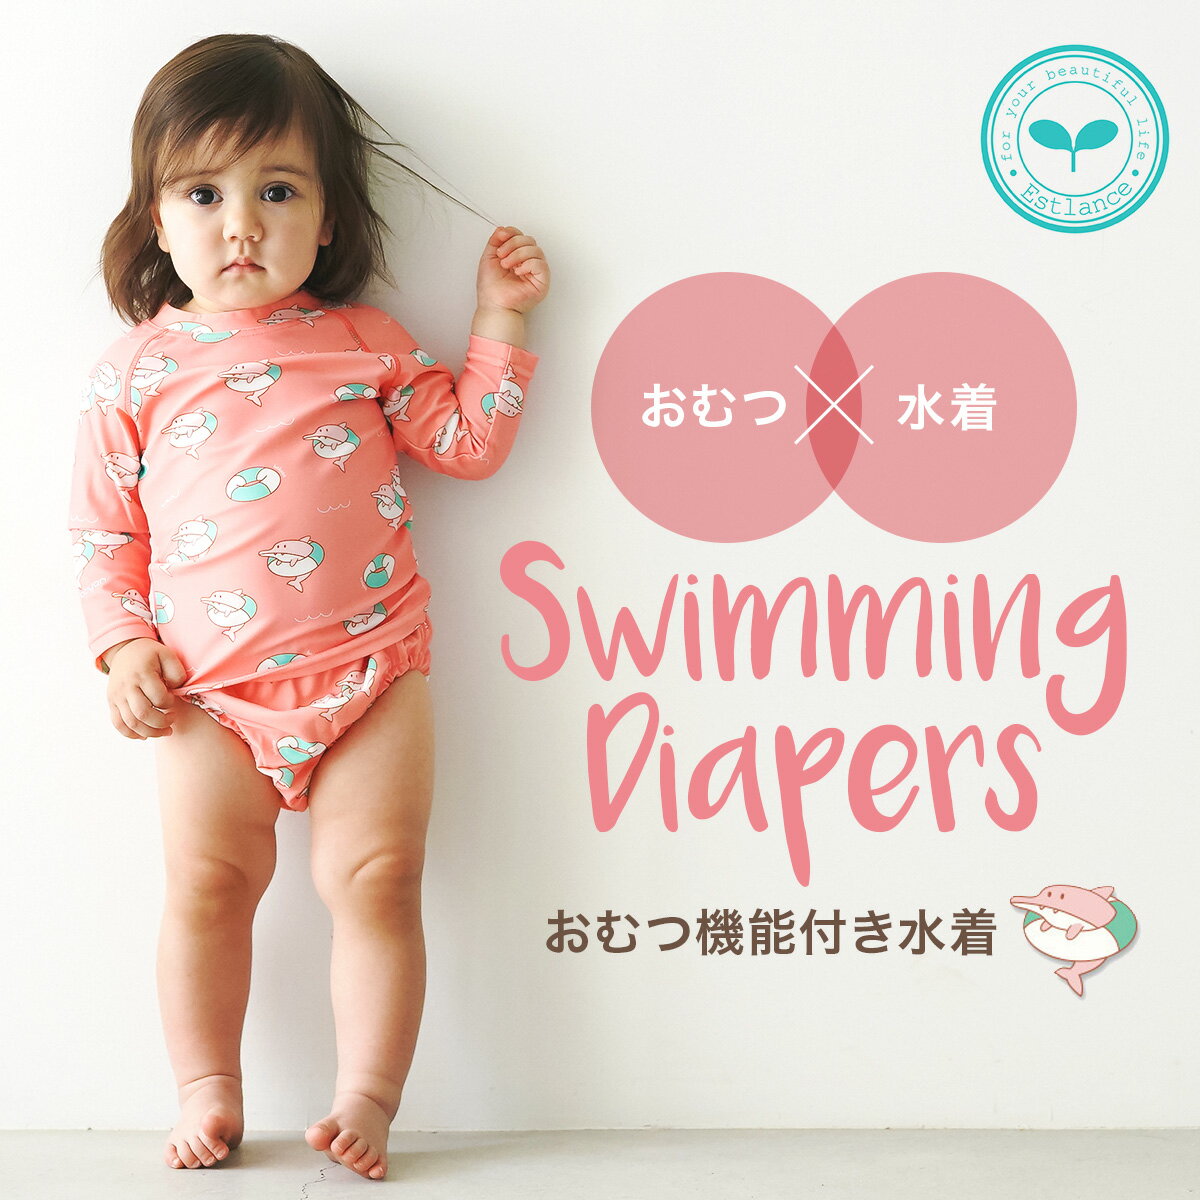 1歳女の子 べビ 用スイミングに 着脱しやすい女の子のかわいい水着のおすすめランキング キテミヨ Kitemiyo